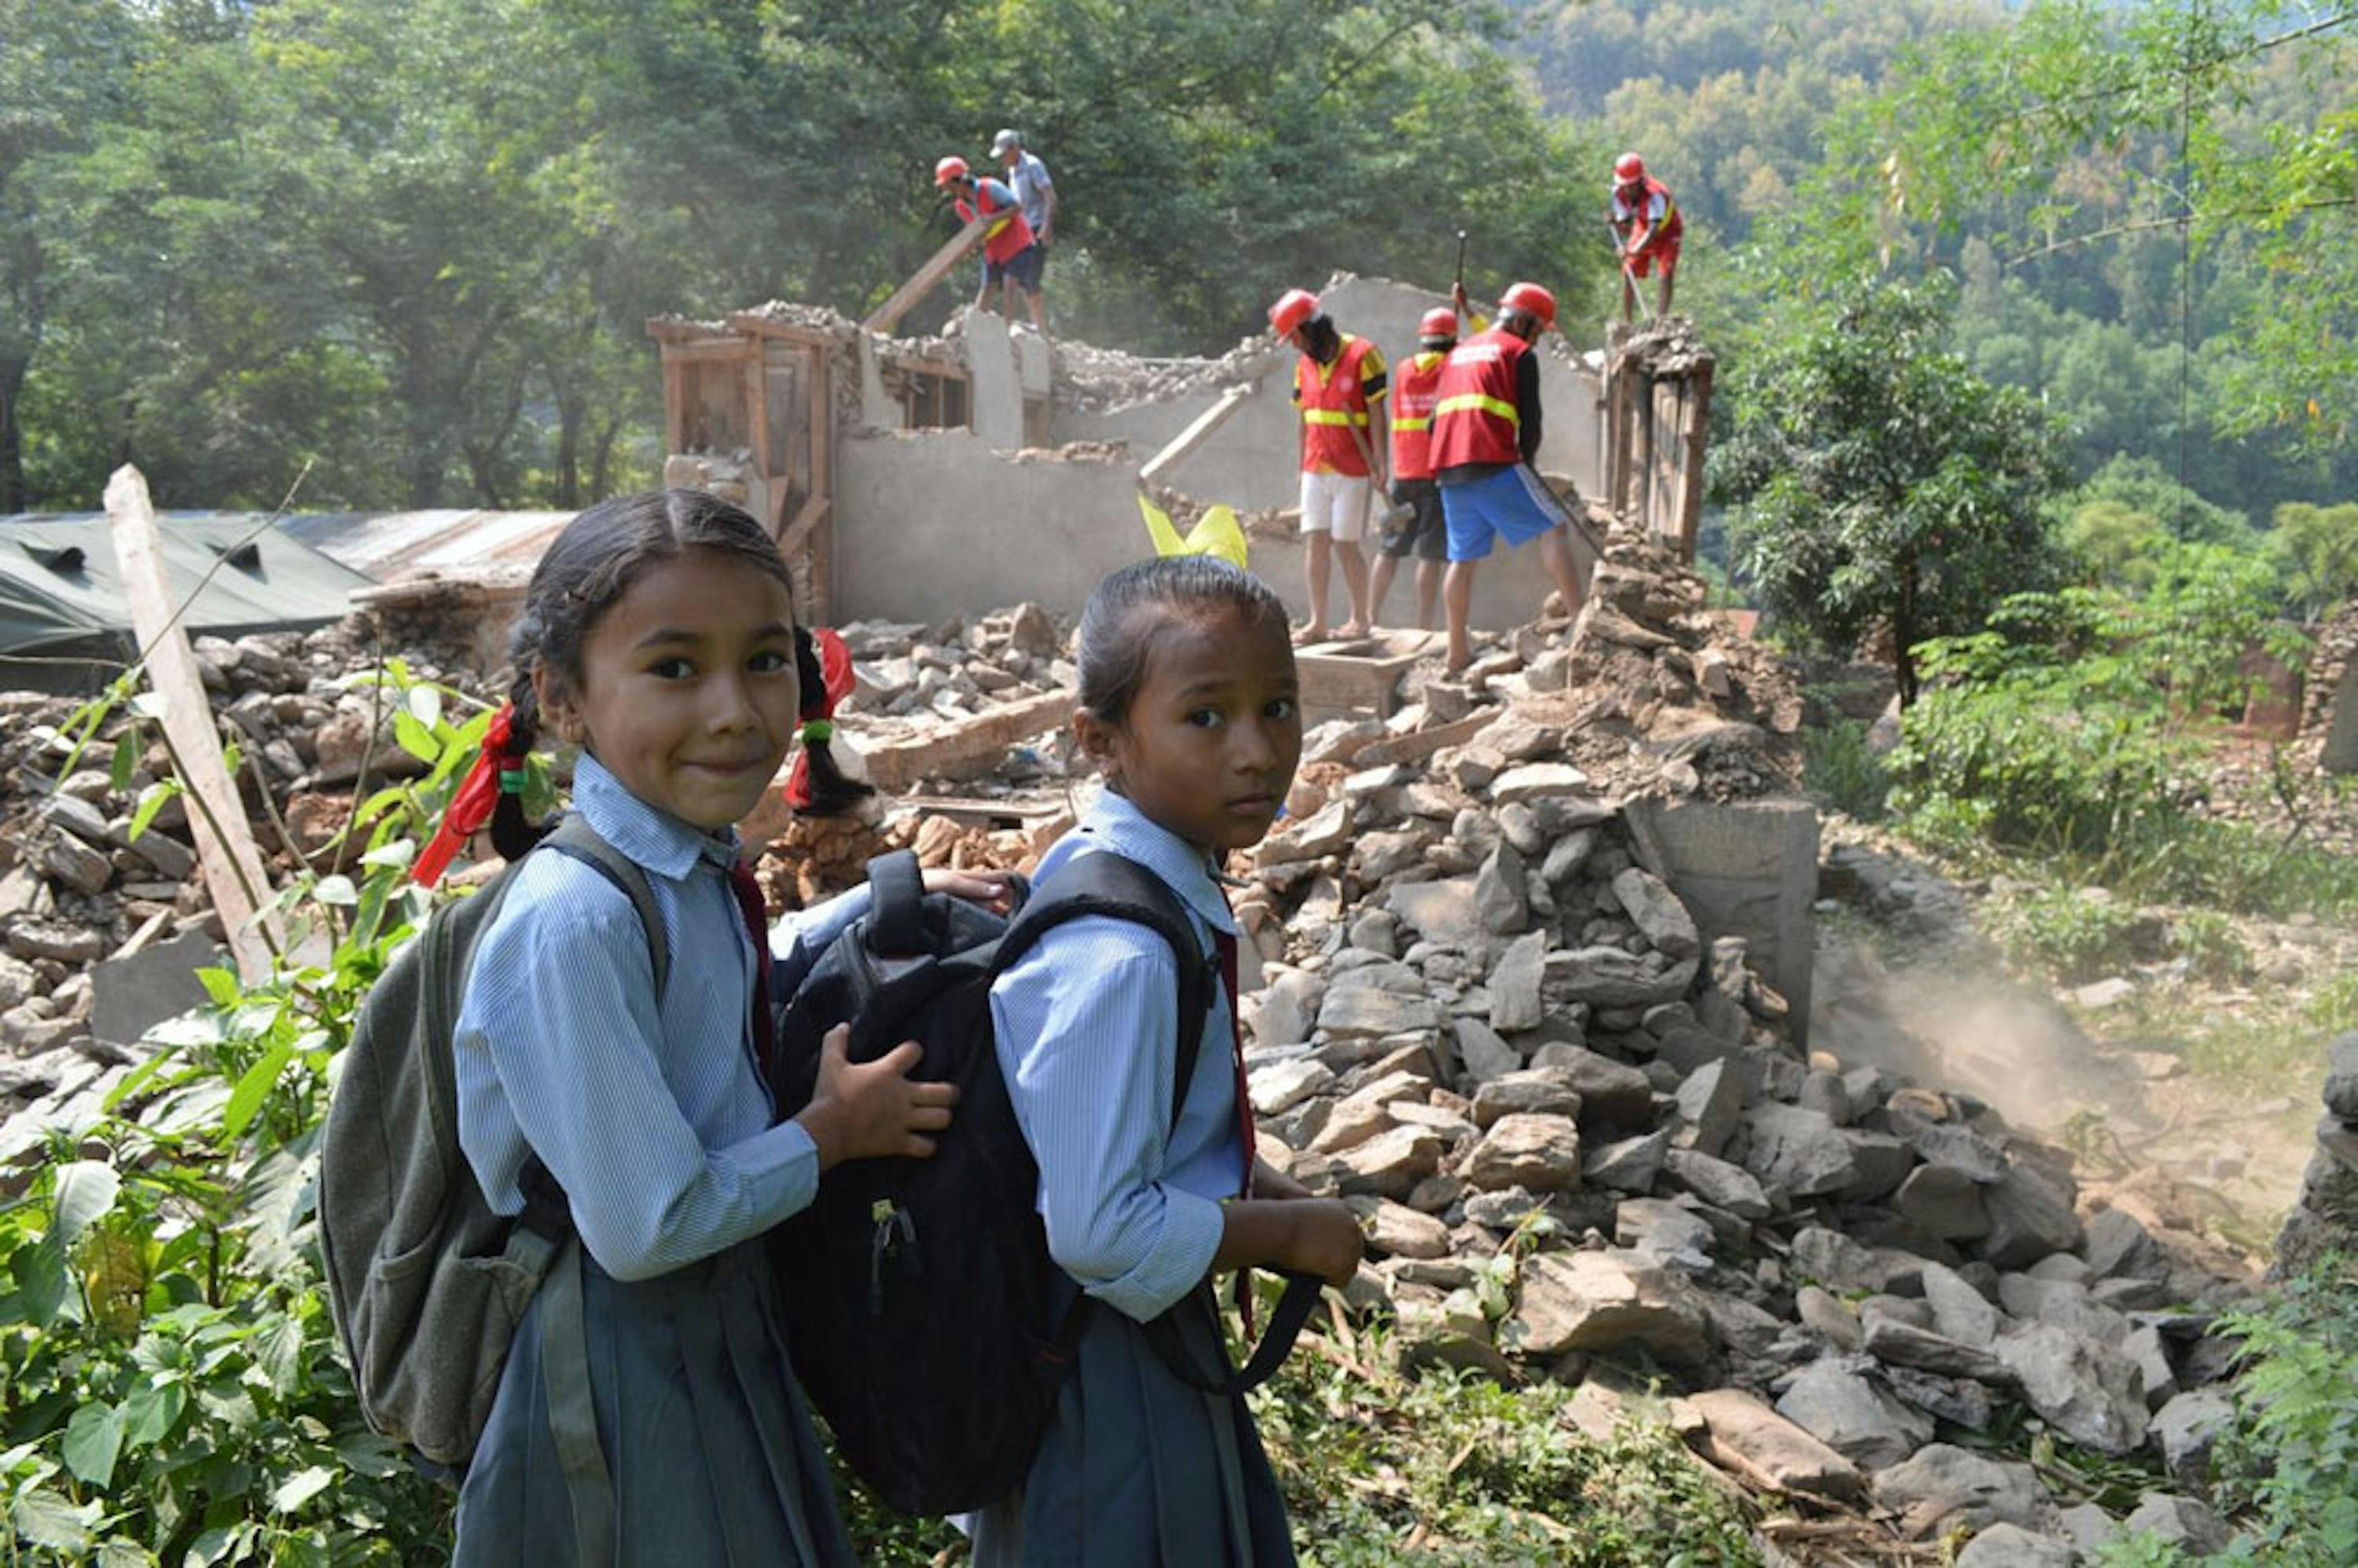 Rushma e Rakshya, alunne di seconda elementare, si recano alla loro scuola, un istituto montessoriano nel distretto di Gorkha, una delle aree più devastate dal terremoto - ©UNICEF/PFPG2015-3361/Sundar Kumar Lama